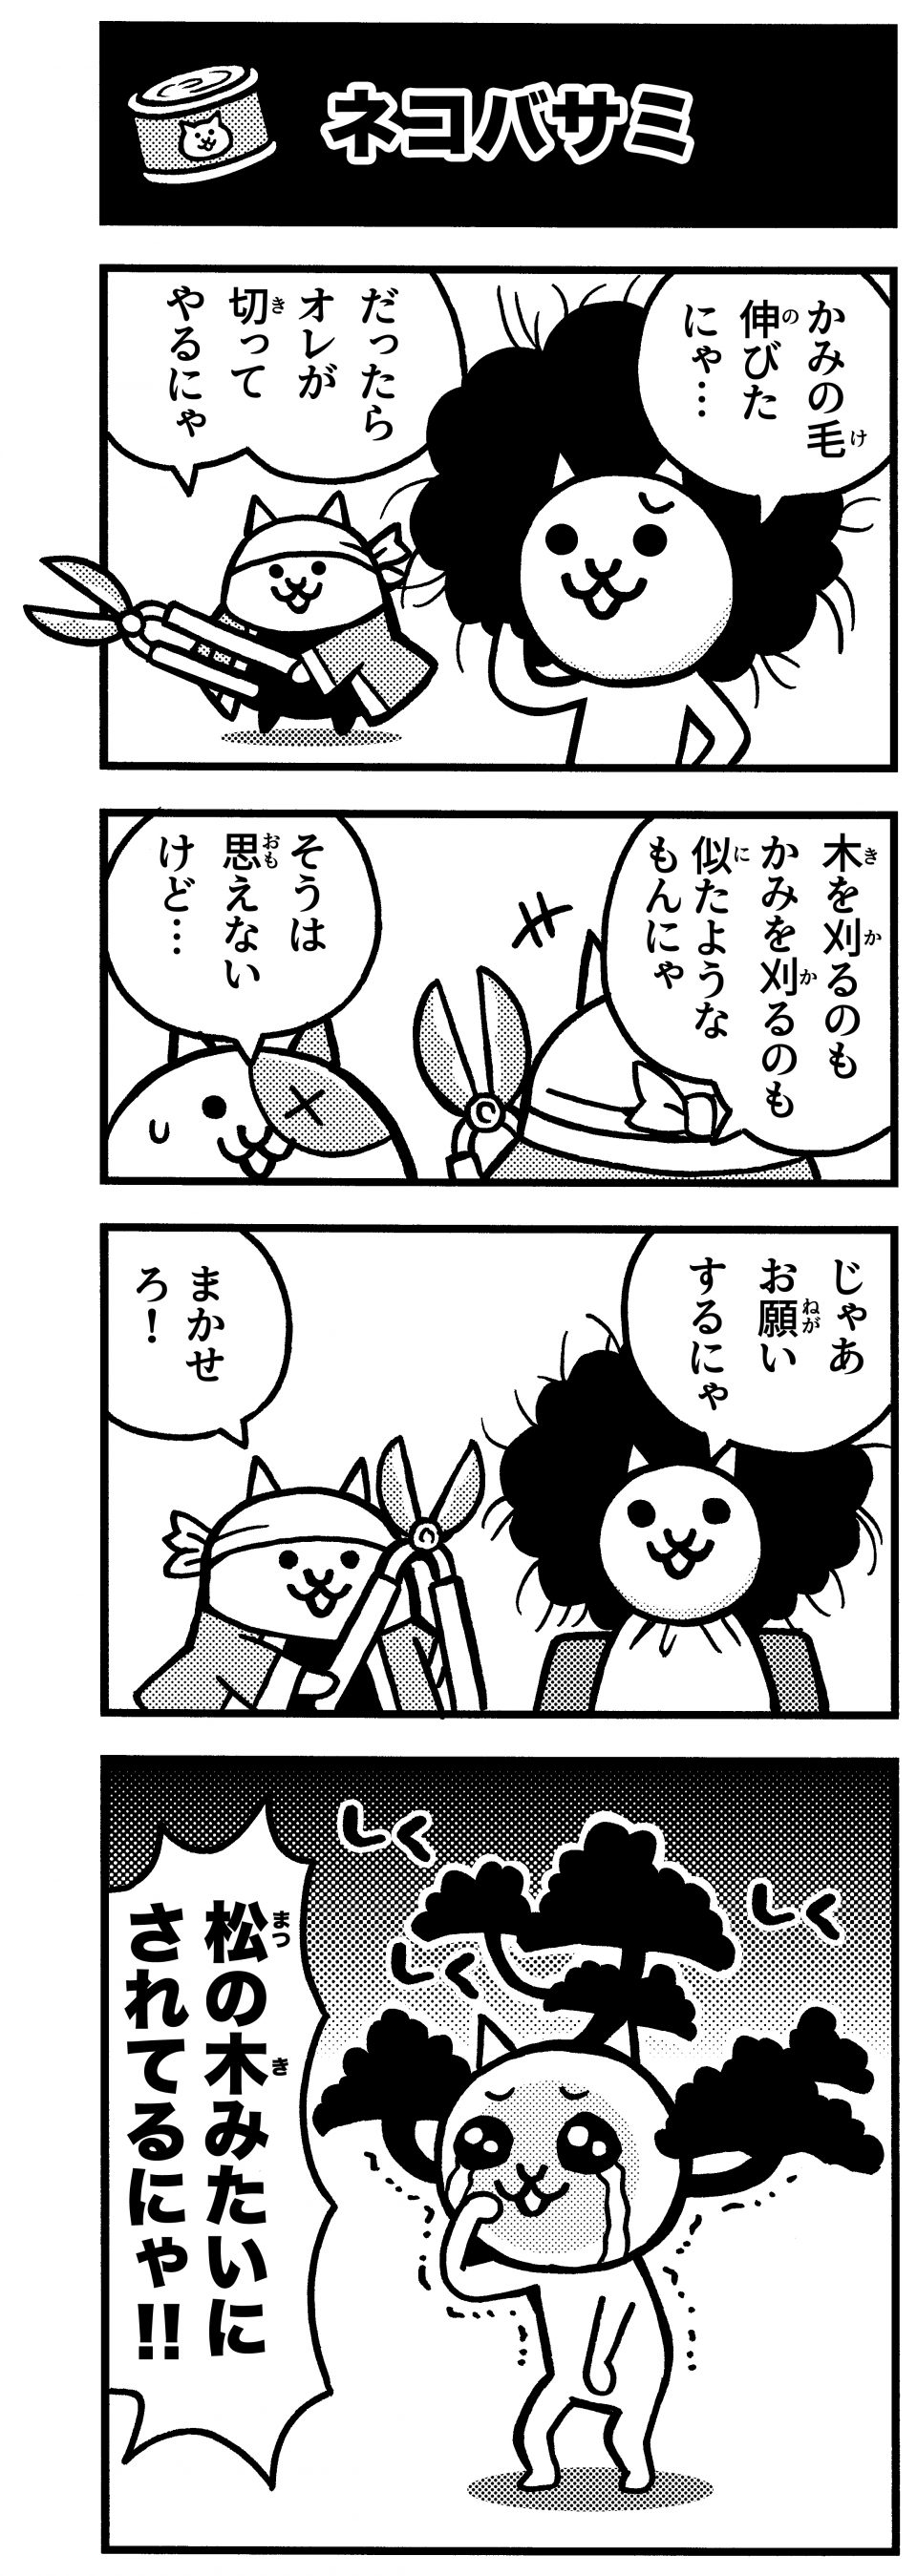 にゃんこ 大 戦争 4 コマ 漫画